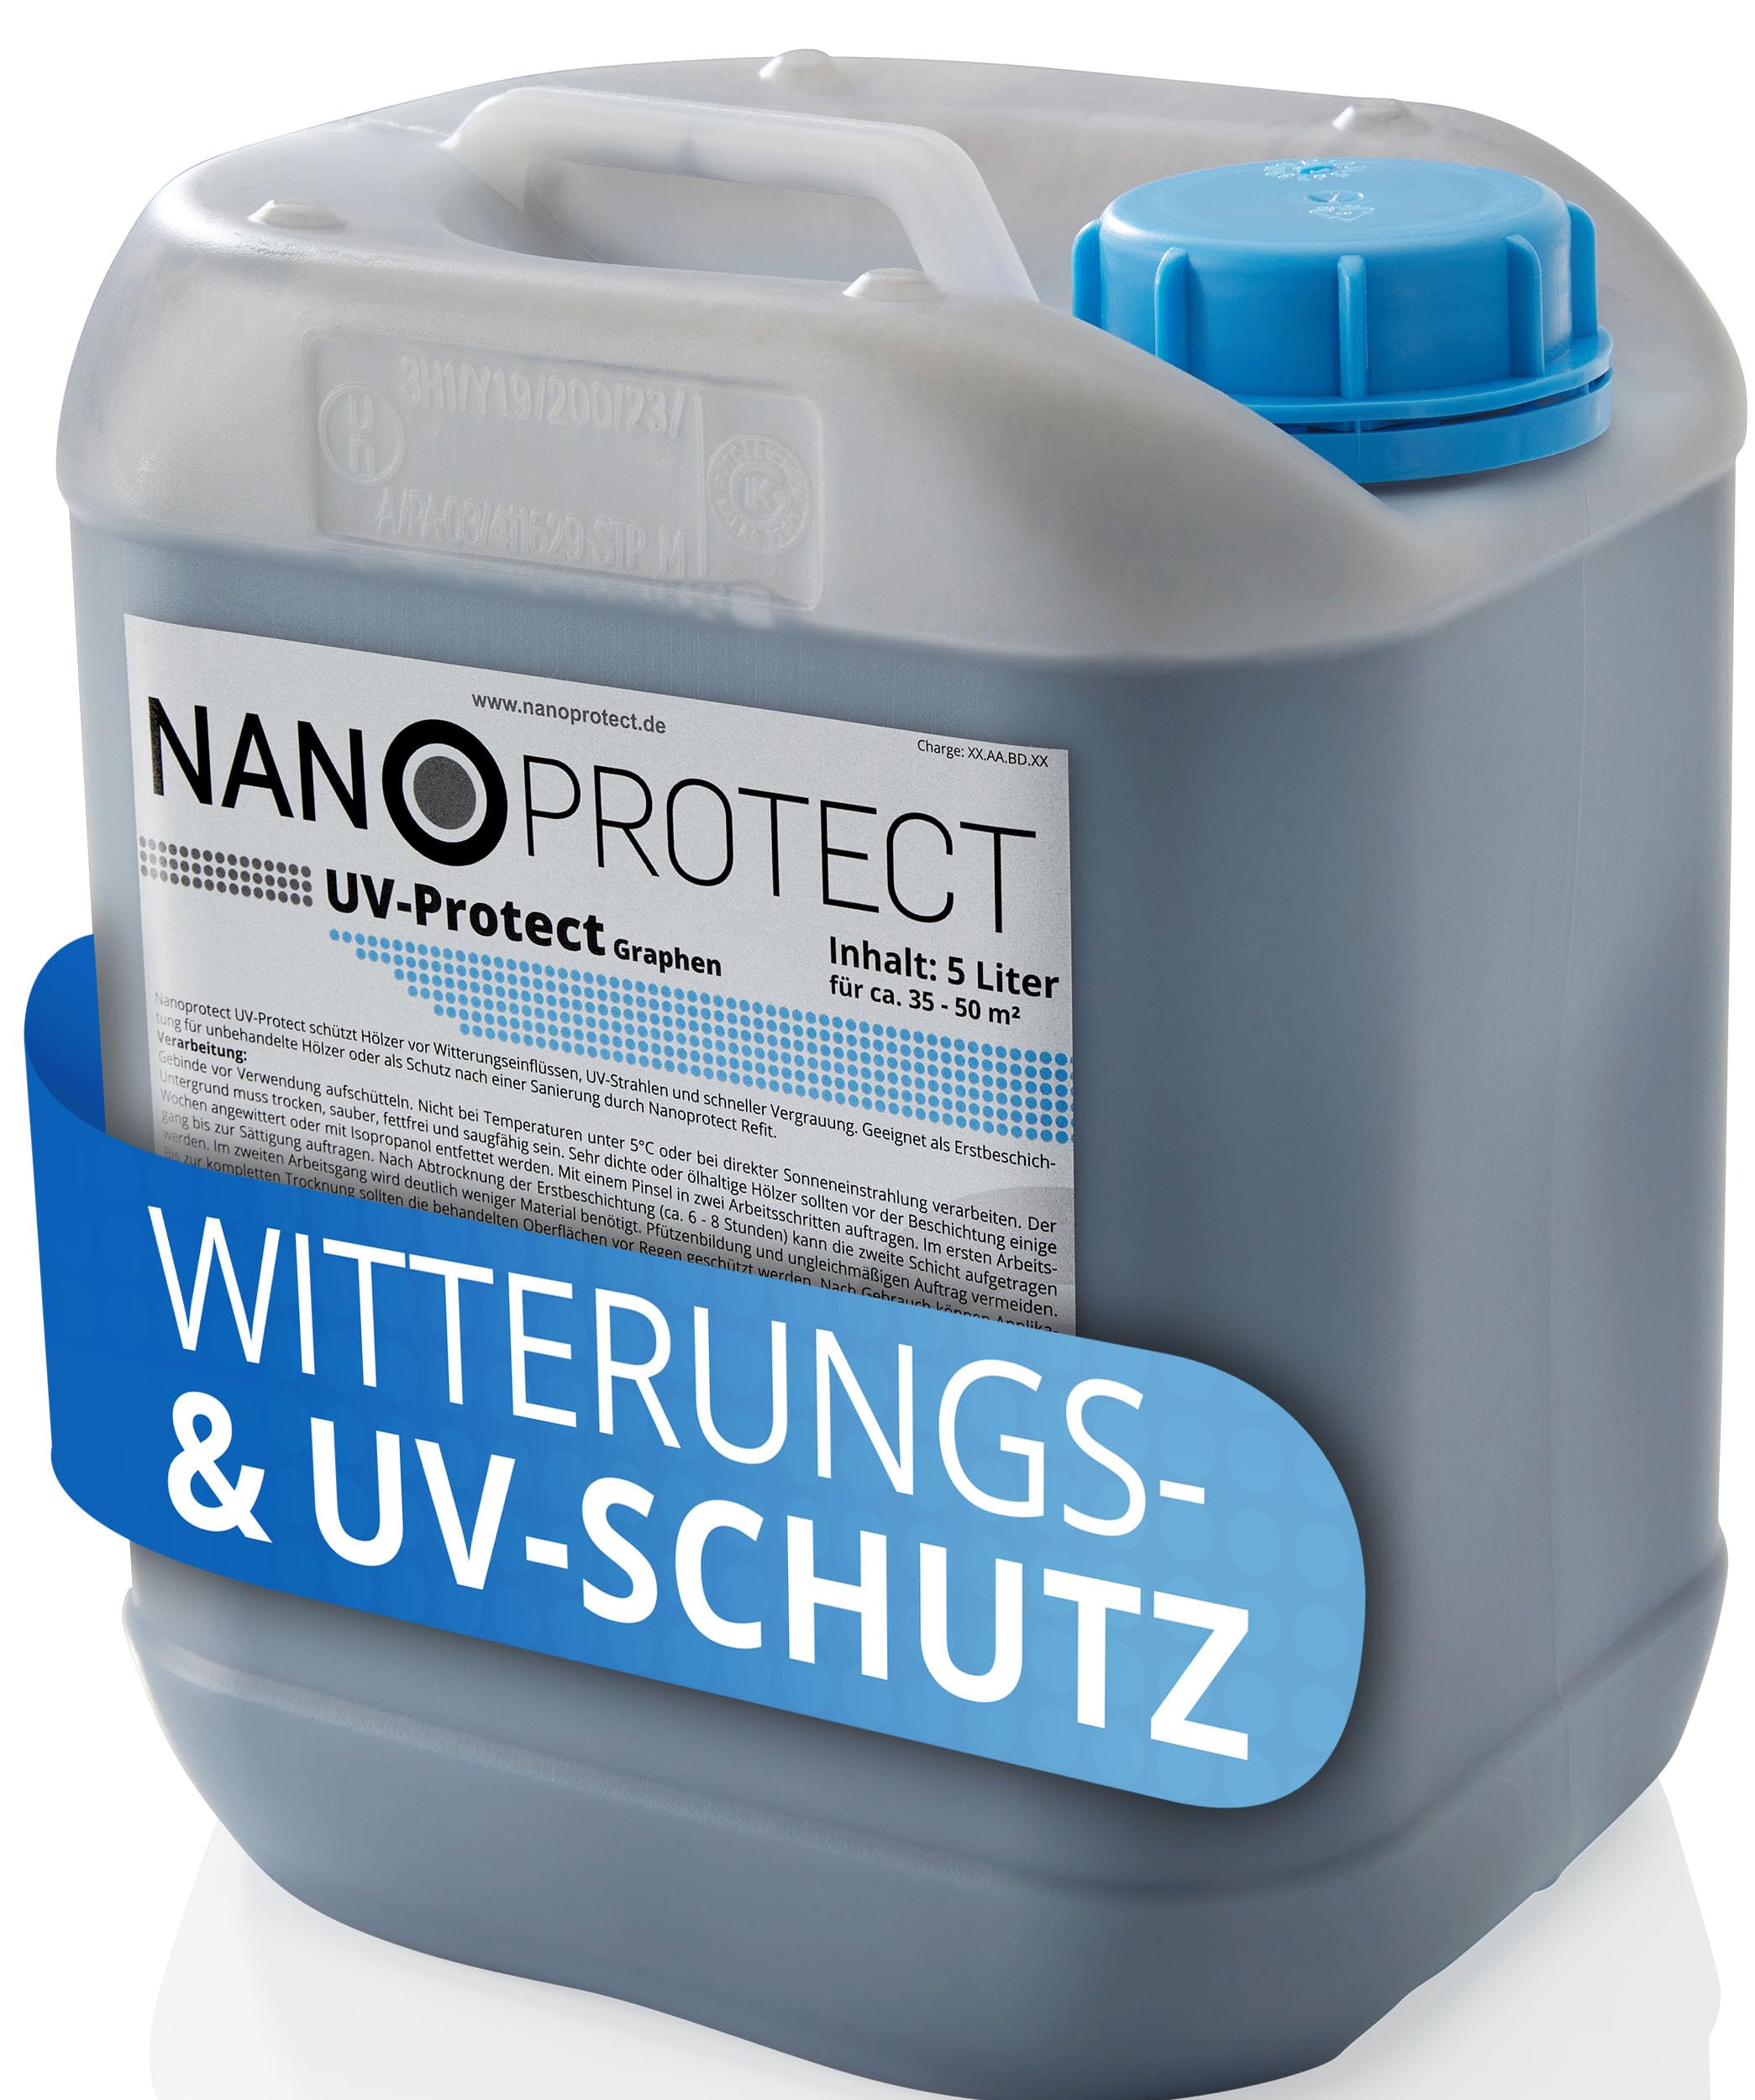 Nanoprotect UV-Protect | Holzöl | UV-Schutz | Witterungsschutz | Langzeitschutz gegen Vergrauung, Austrocknung und Rissbildung | 5 Liter | Graphen - dunkelgrau | Für ca. 35-50 m²